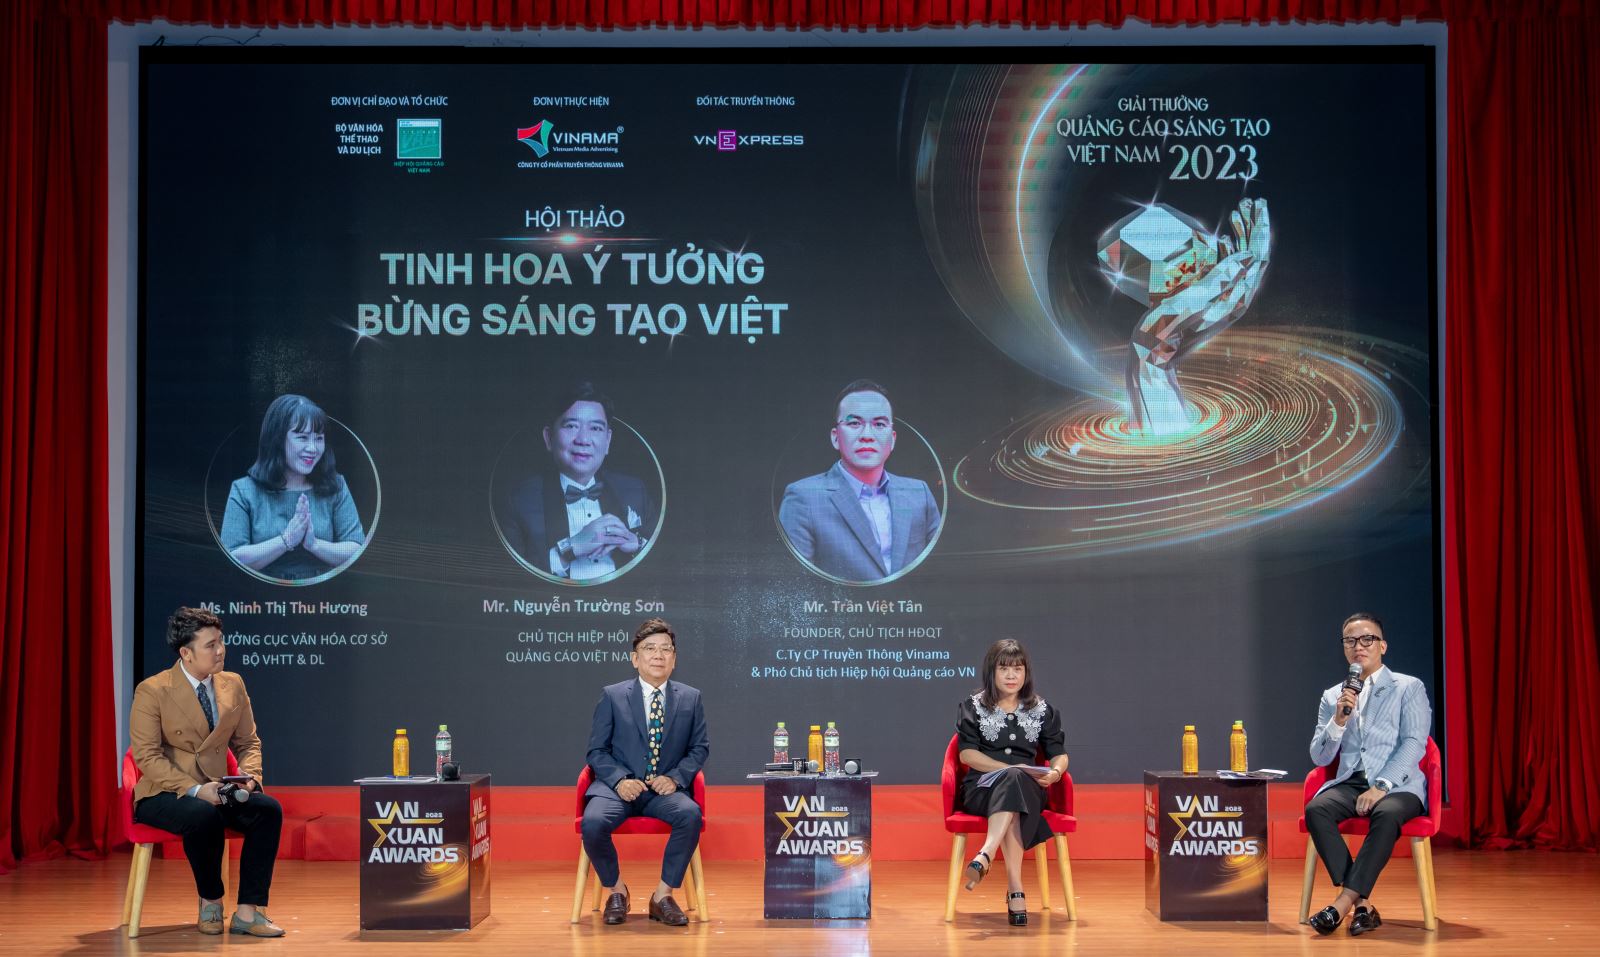 1.	Hội thảo: Tinh hoa ý tưởng – Bừng sáng tạo Việt và thông tin về Giải thưởng Quảng cáo sáng tạo Việt Nam”